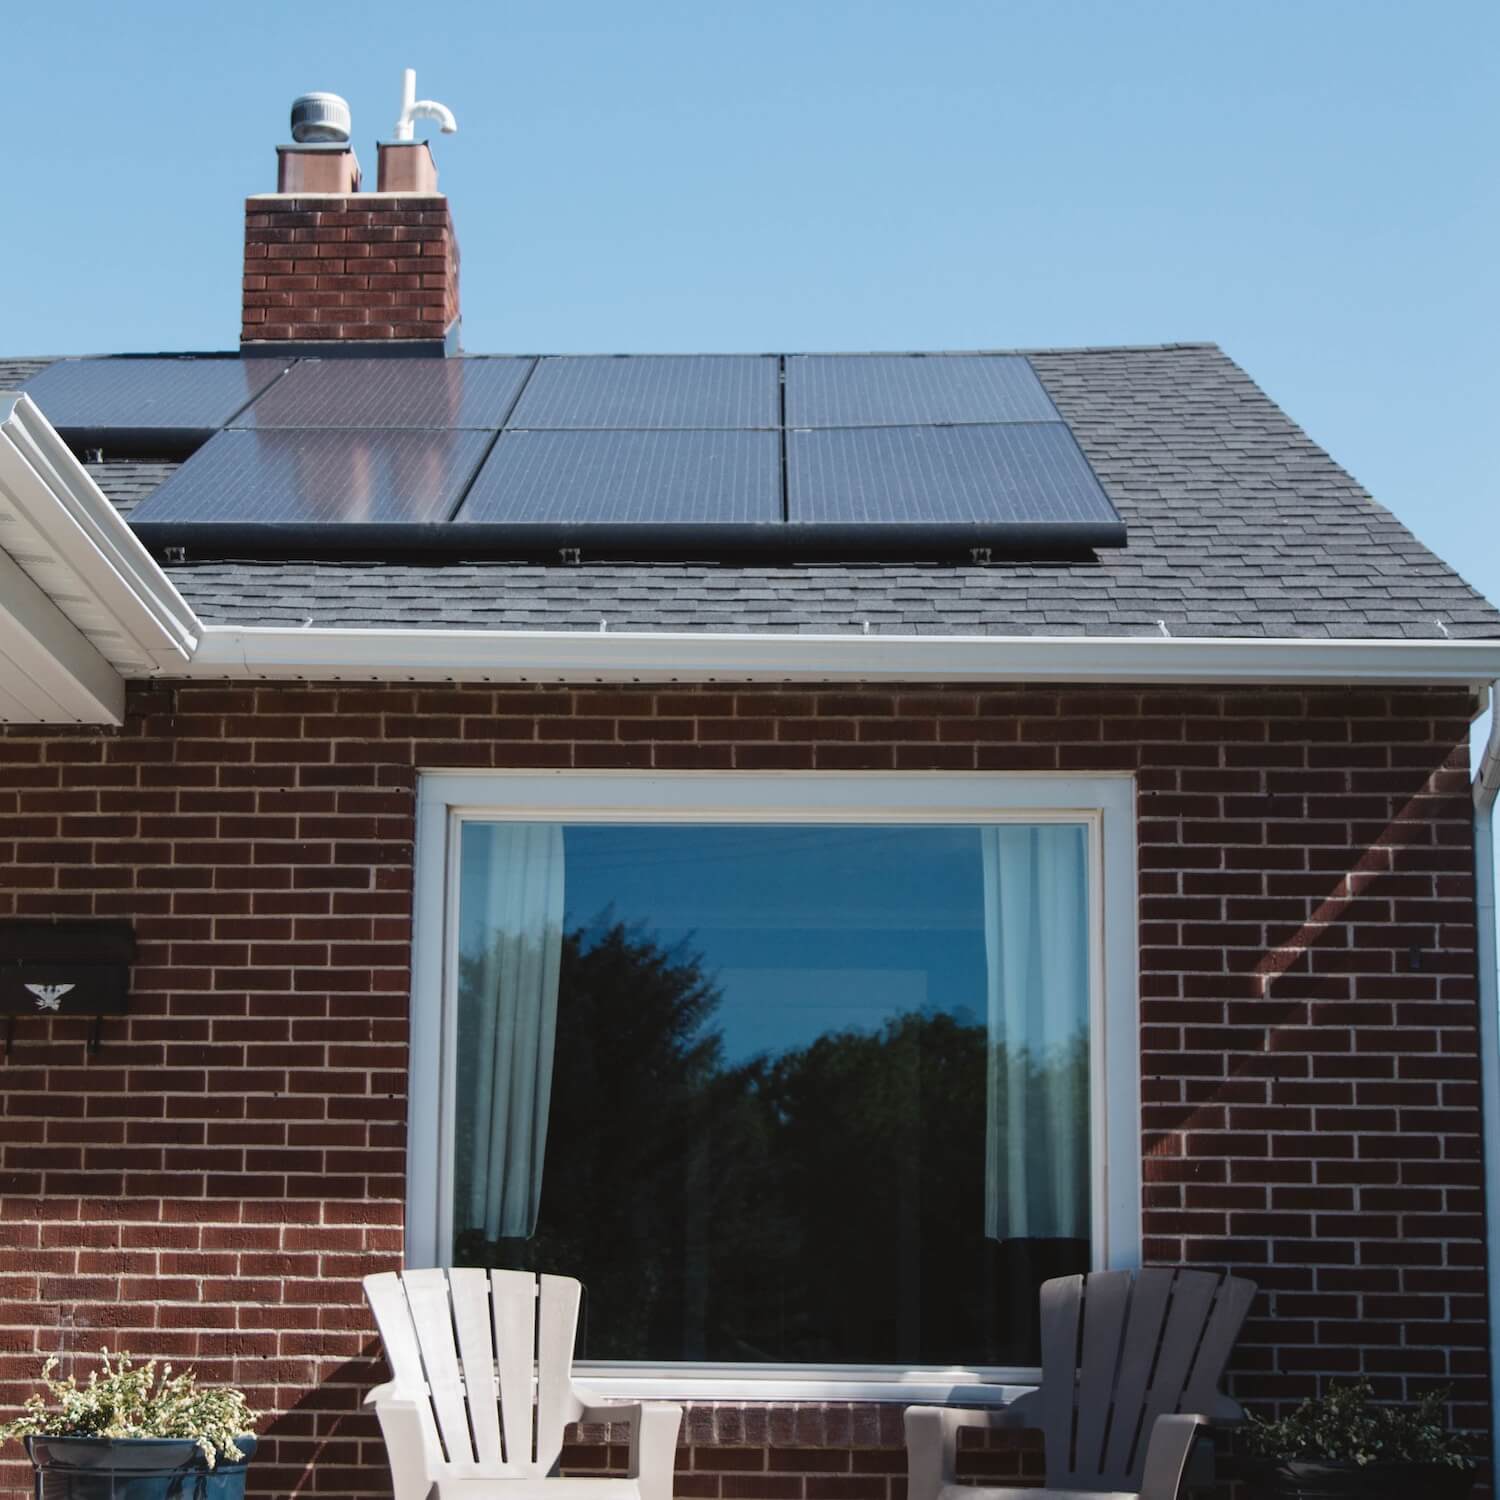 panneaux solaires sur une maison